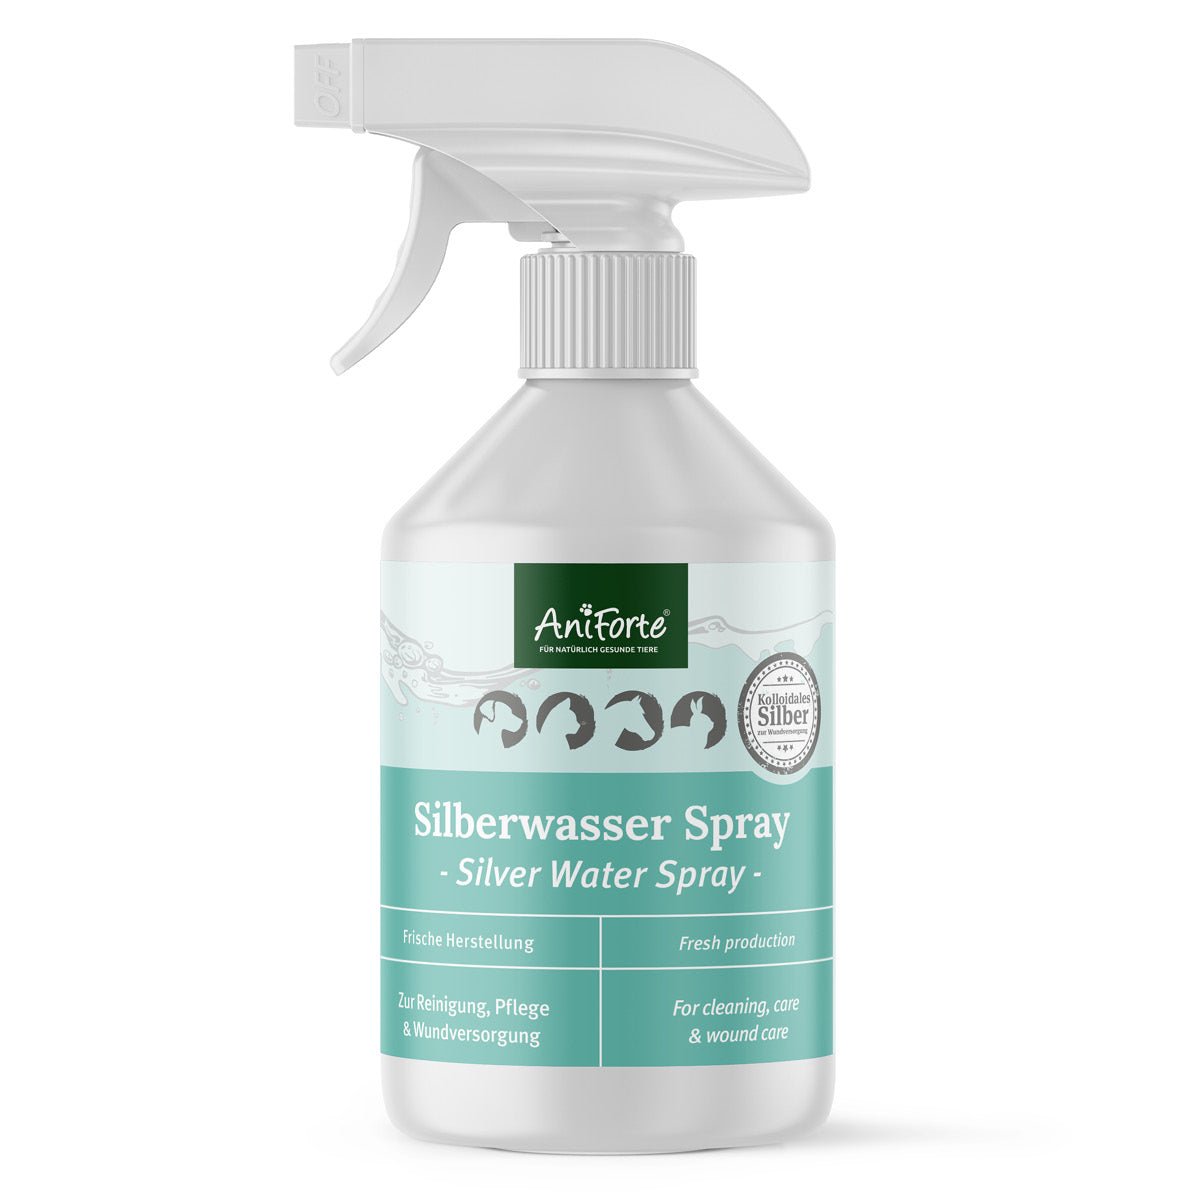 Silberwasser Spray - AniForte